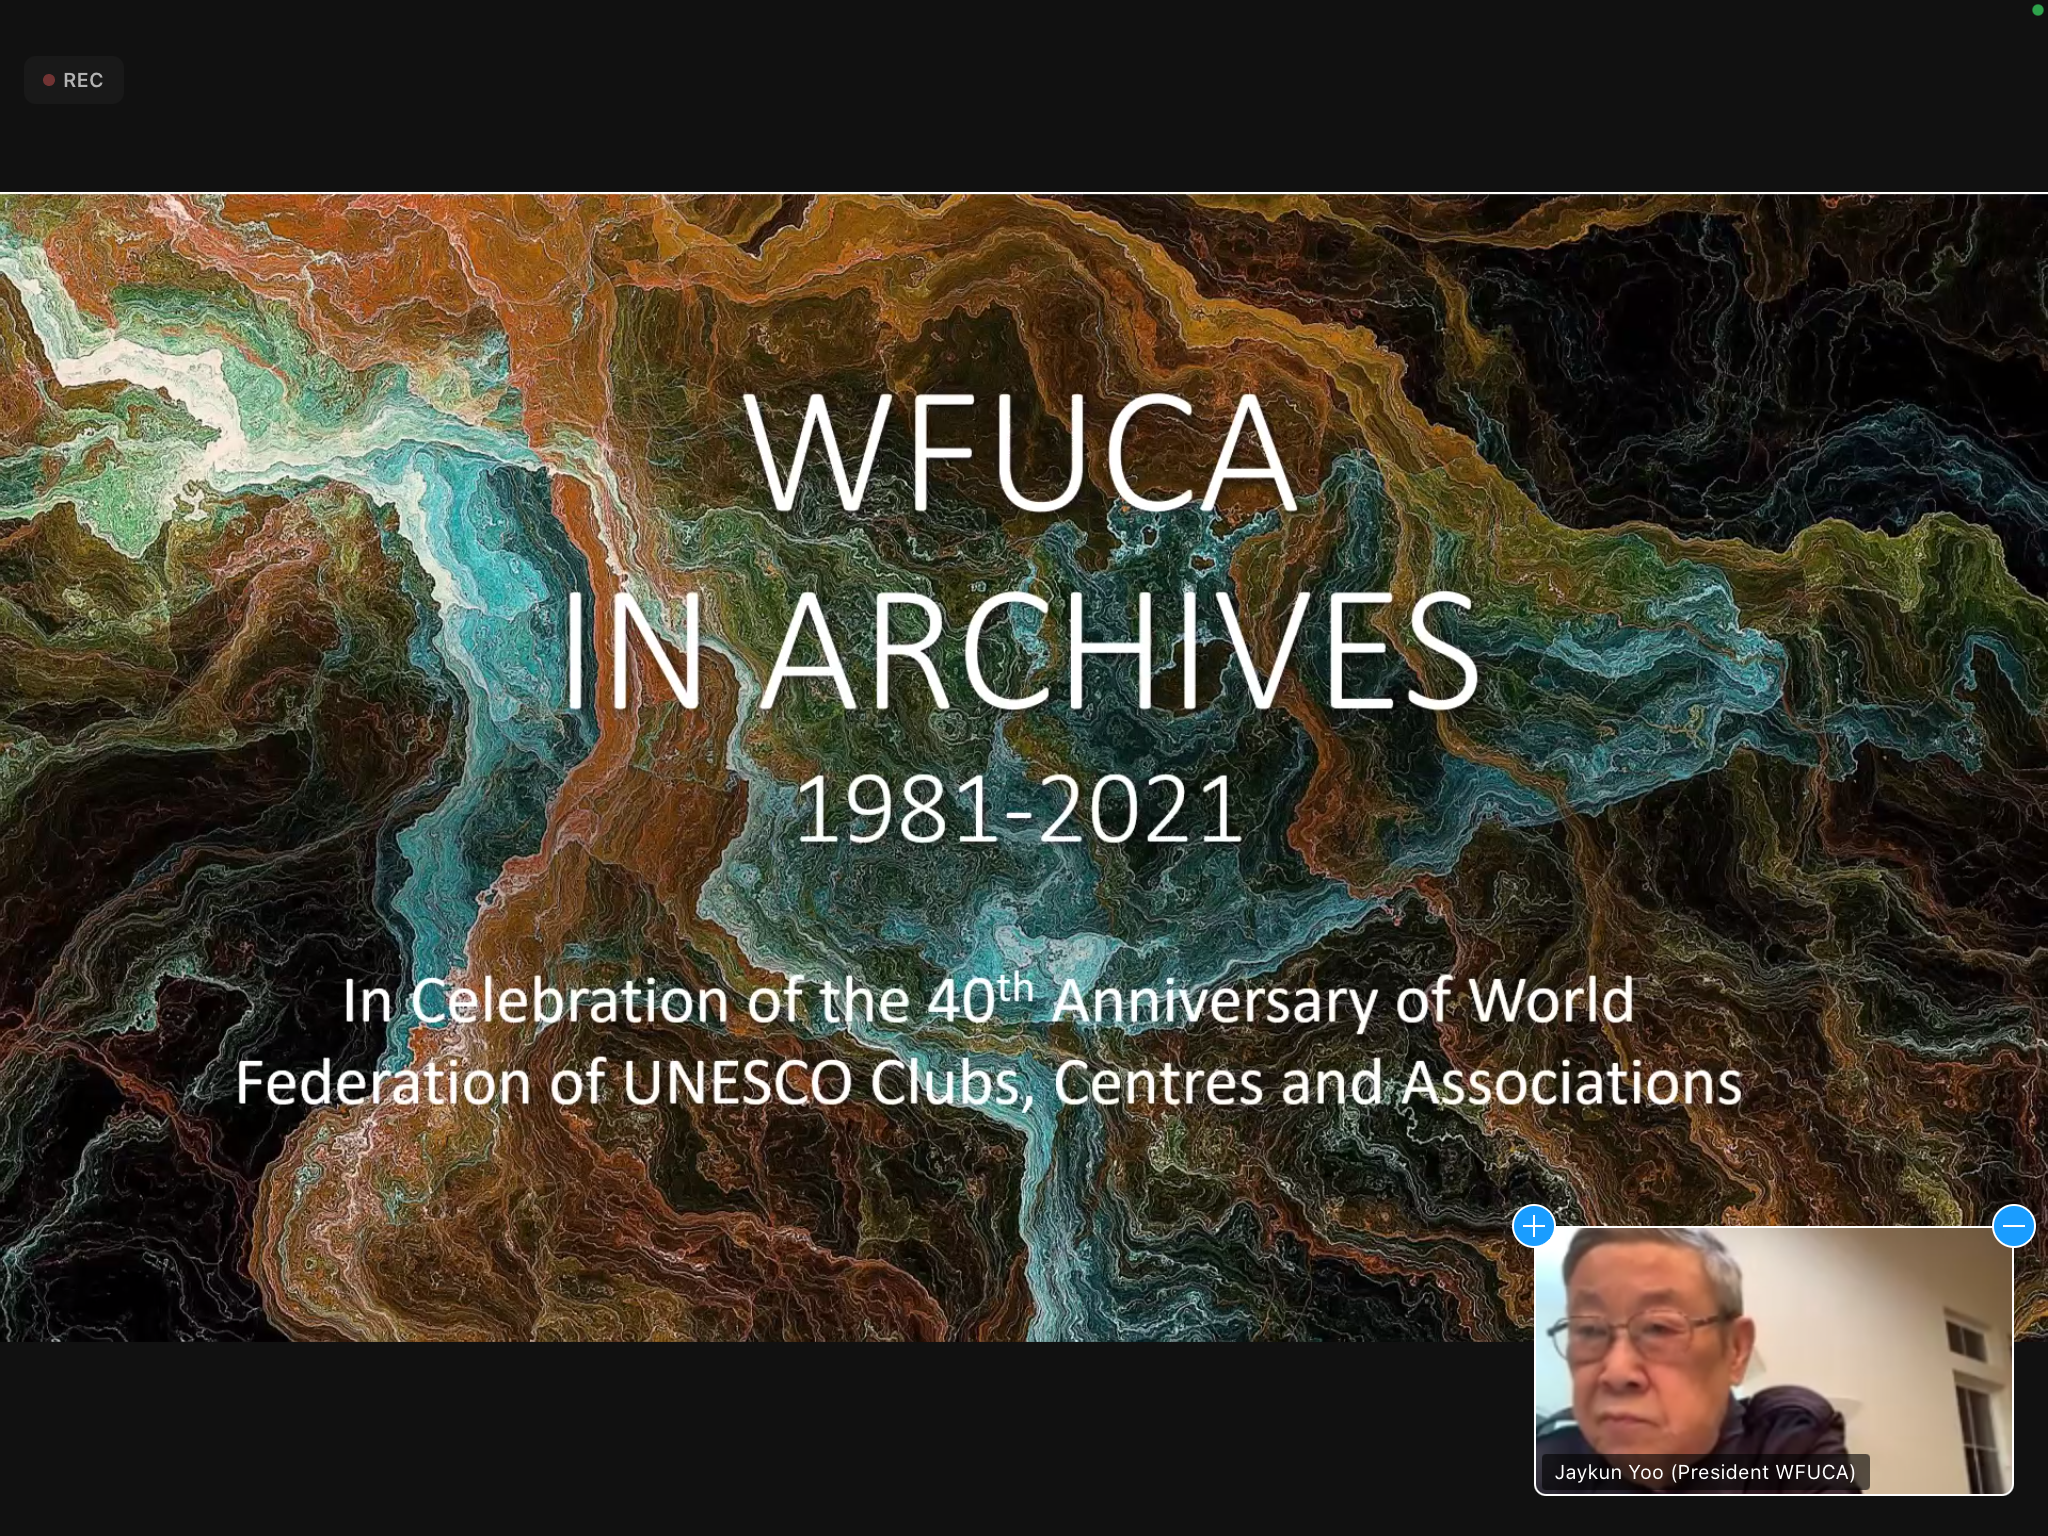 协会应邀参加联合国教科文组织协会世界联合会（WFUCA）成立40周年庆典 